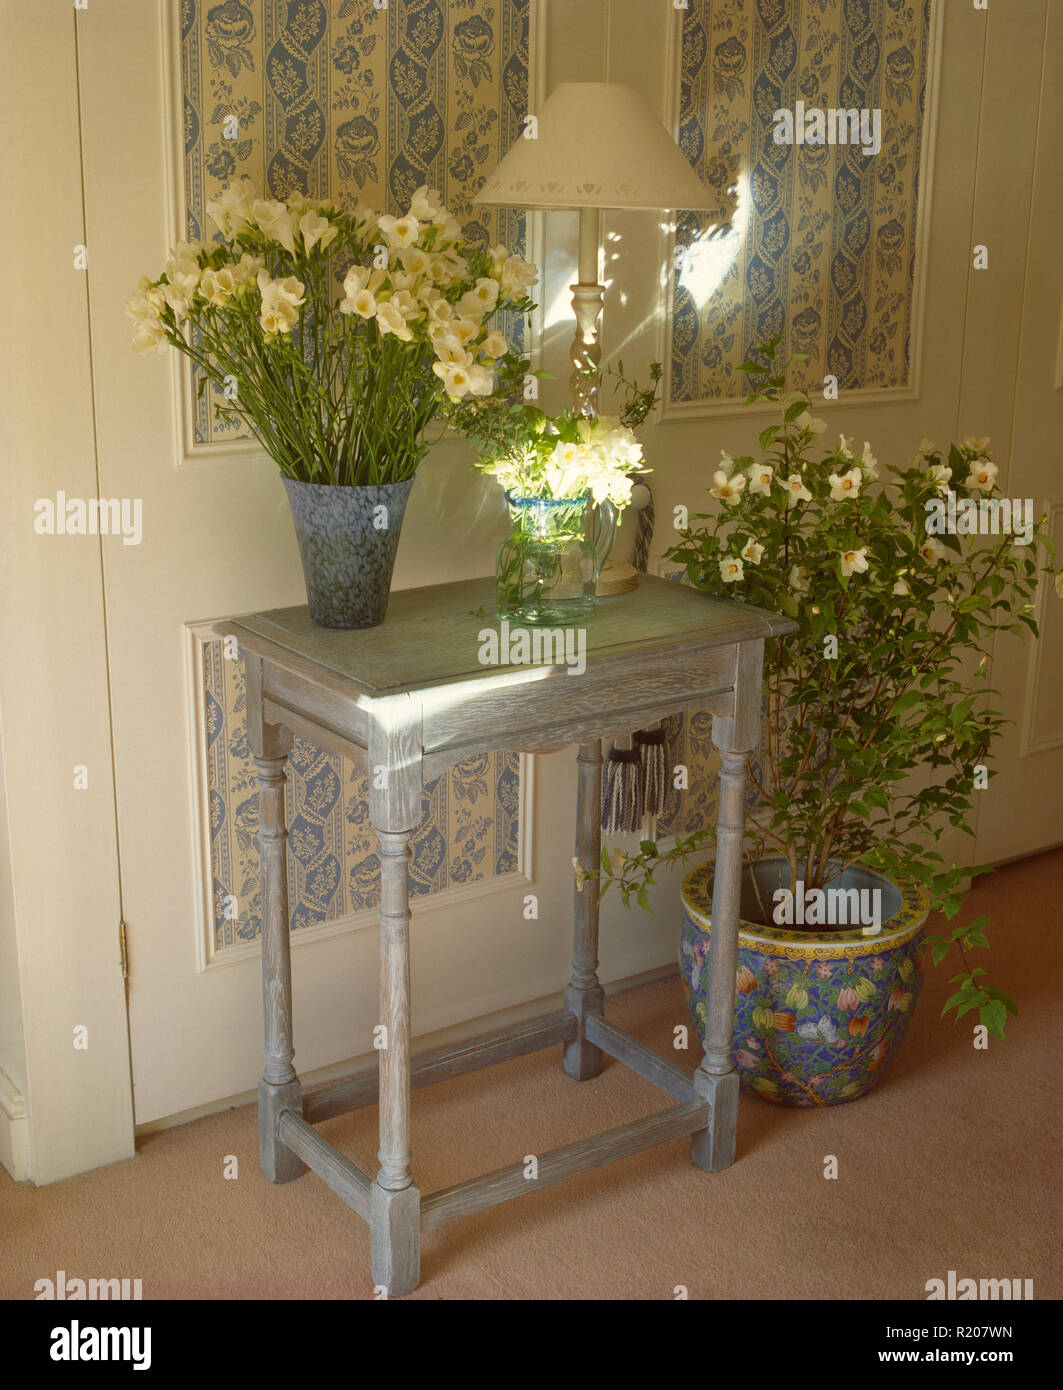 Vase de fleurs blanches peintes sur table console Banque D'Images